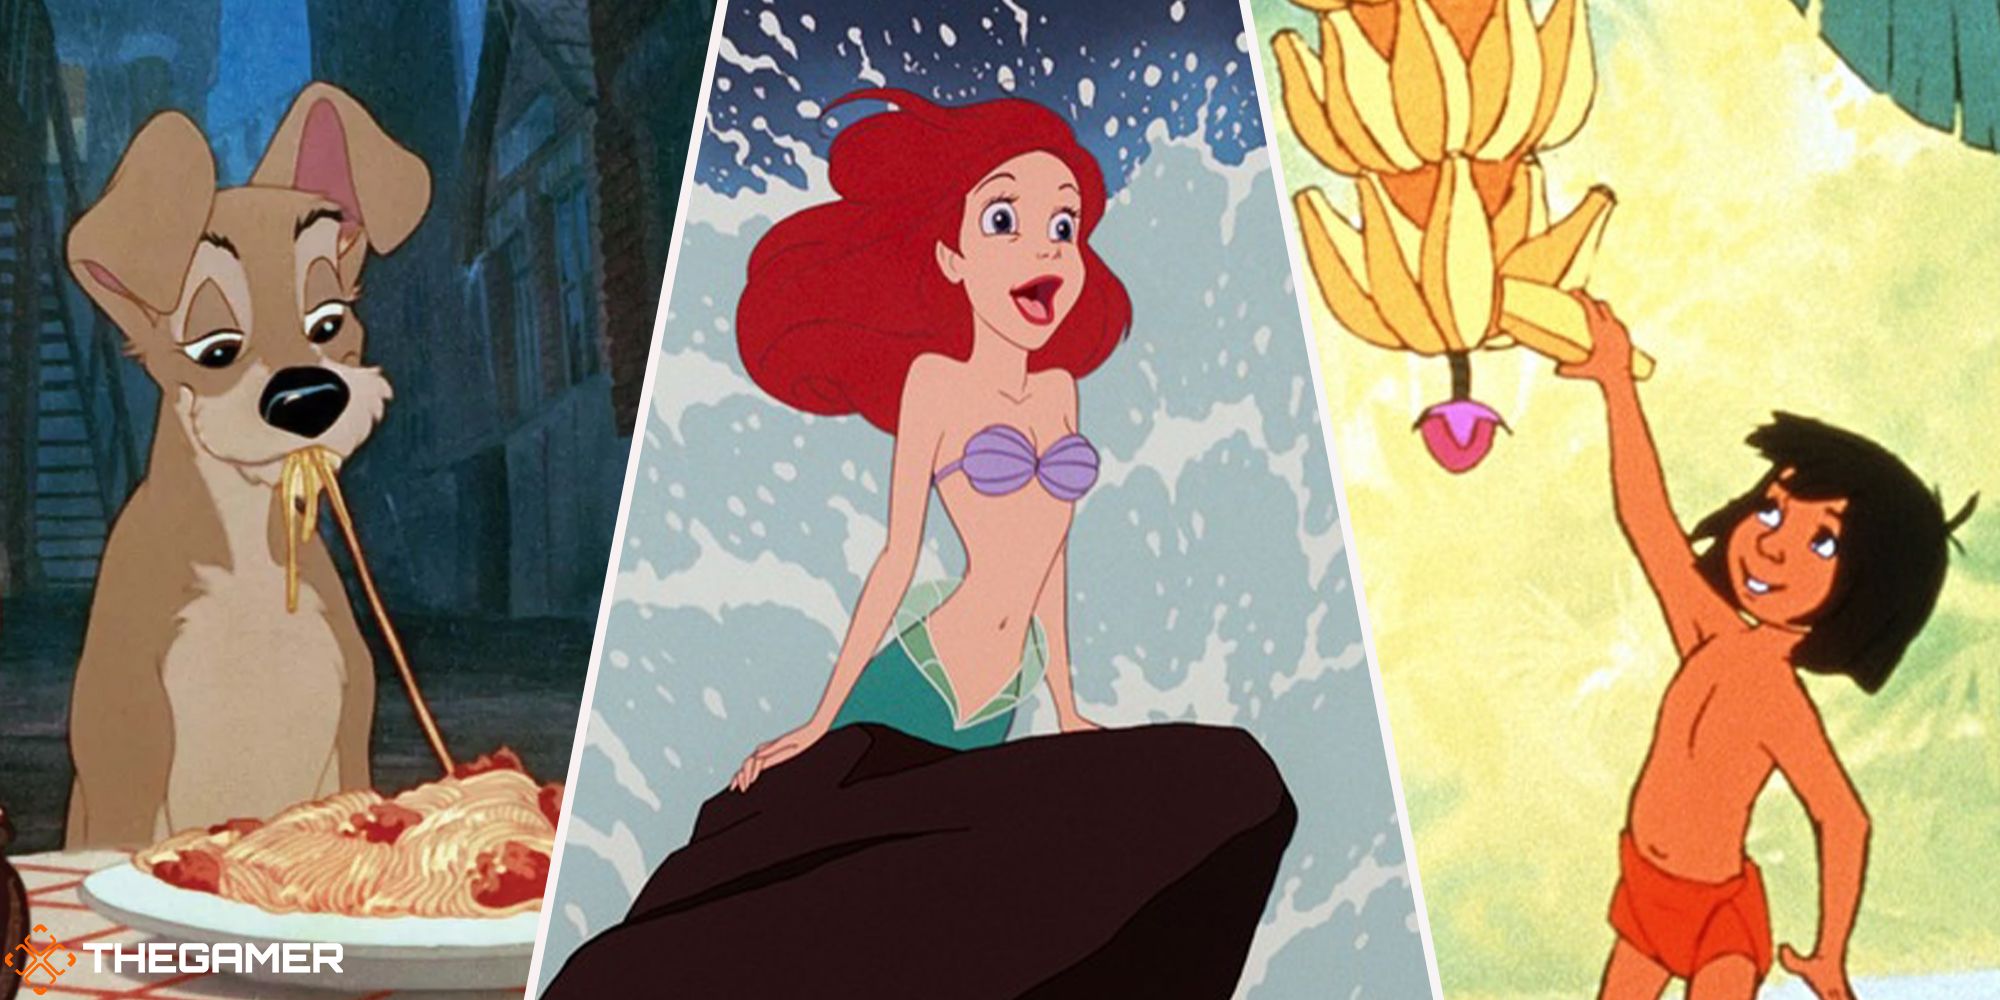 Ariel (kleine Meerjungfrau) in der Mitte, Tramp (Dame und Landstreicher) links, Dschungelbuch rechts